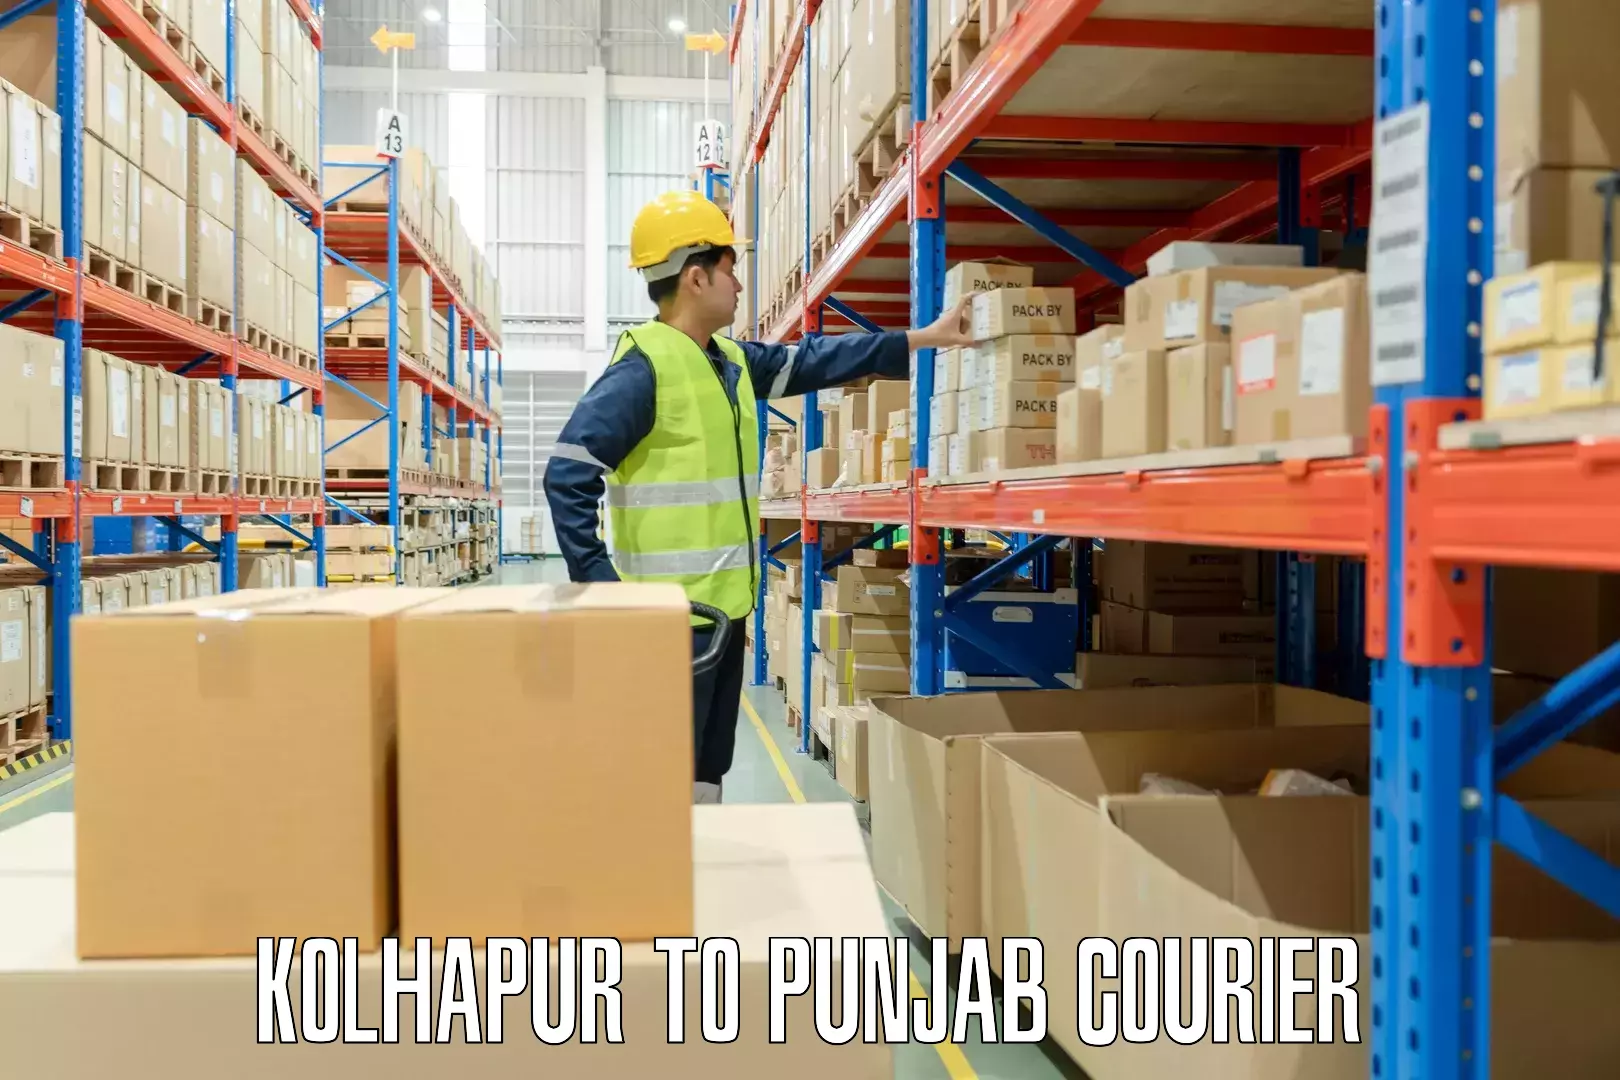 Luggage transport guidelines Kolhapur to Punjab